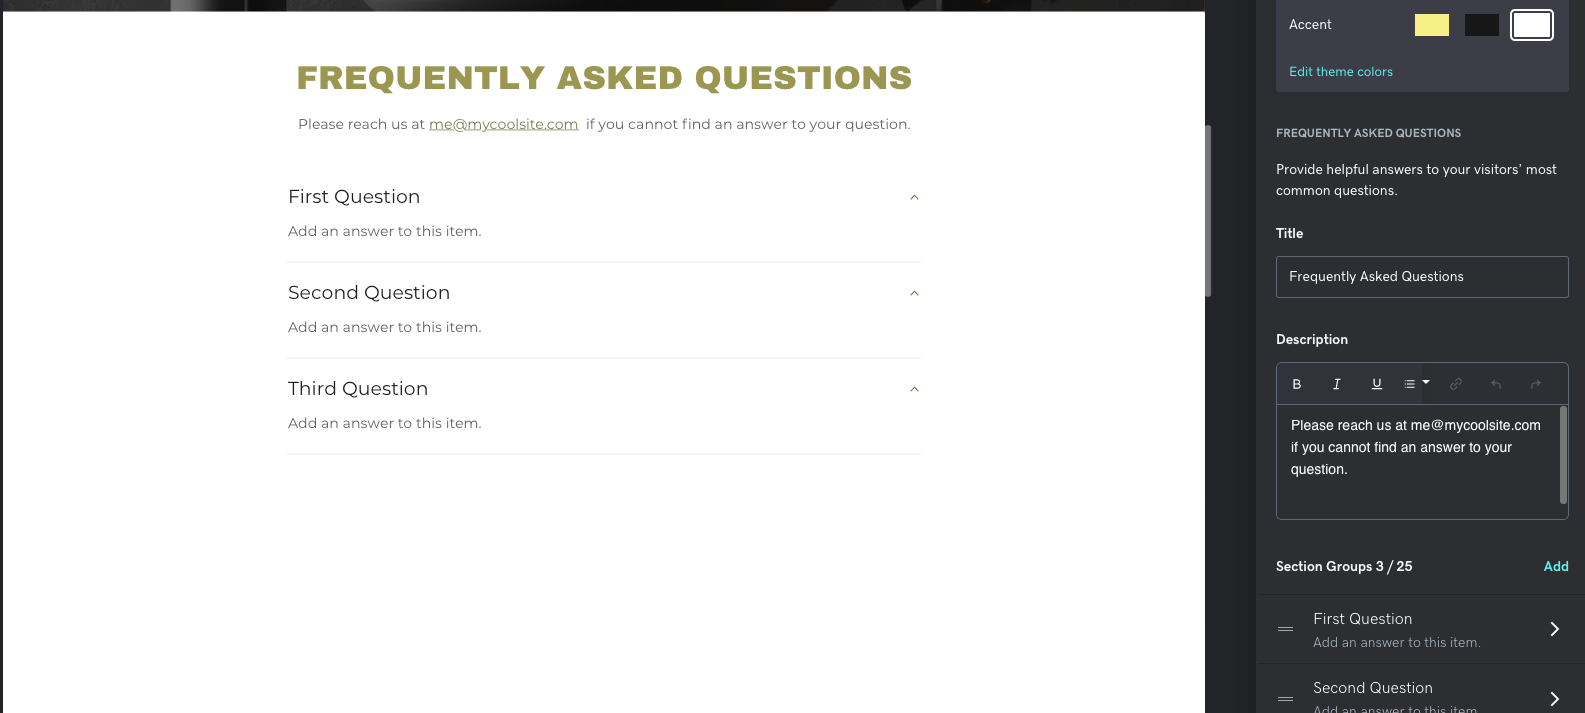 Captura de tela da nova seção de Perguntas frequentes